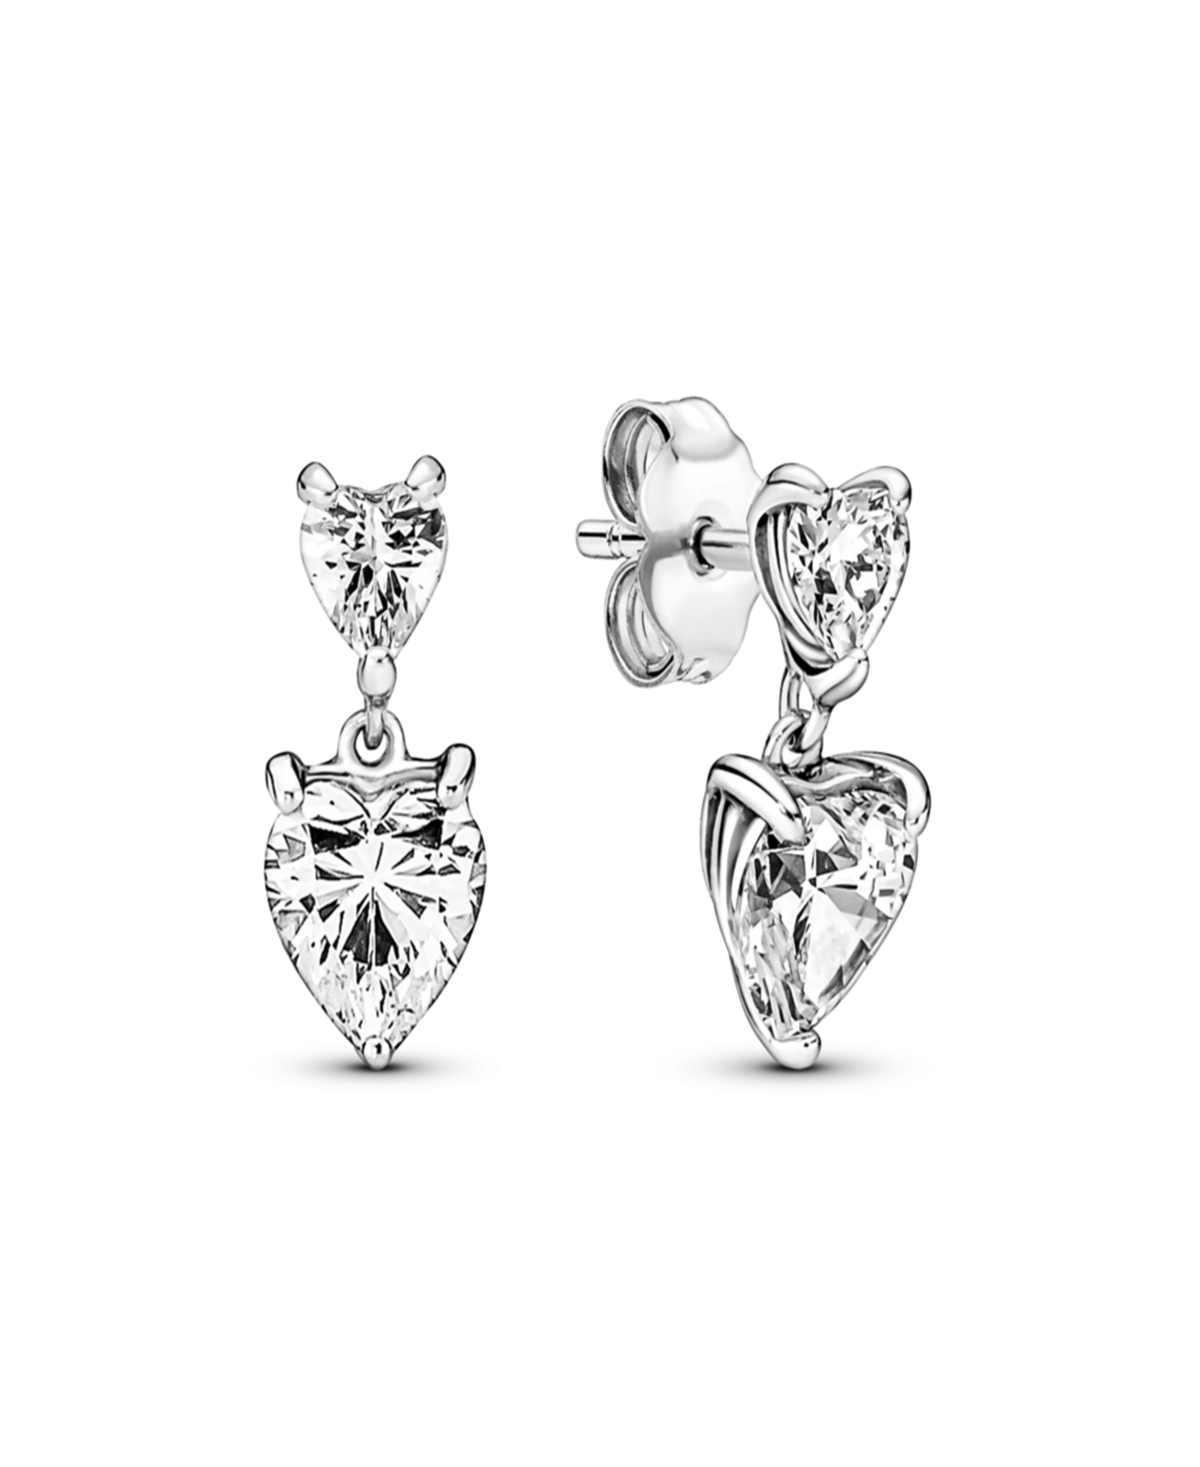 Double Heart Sparkling Stud Earrings - Silver